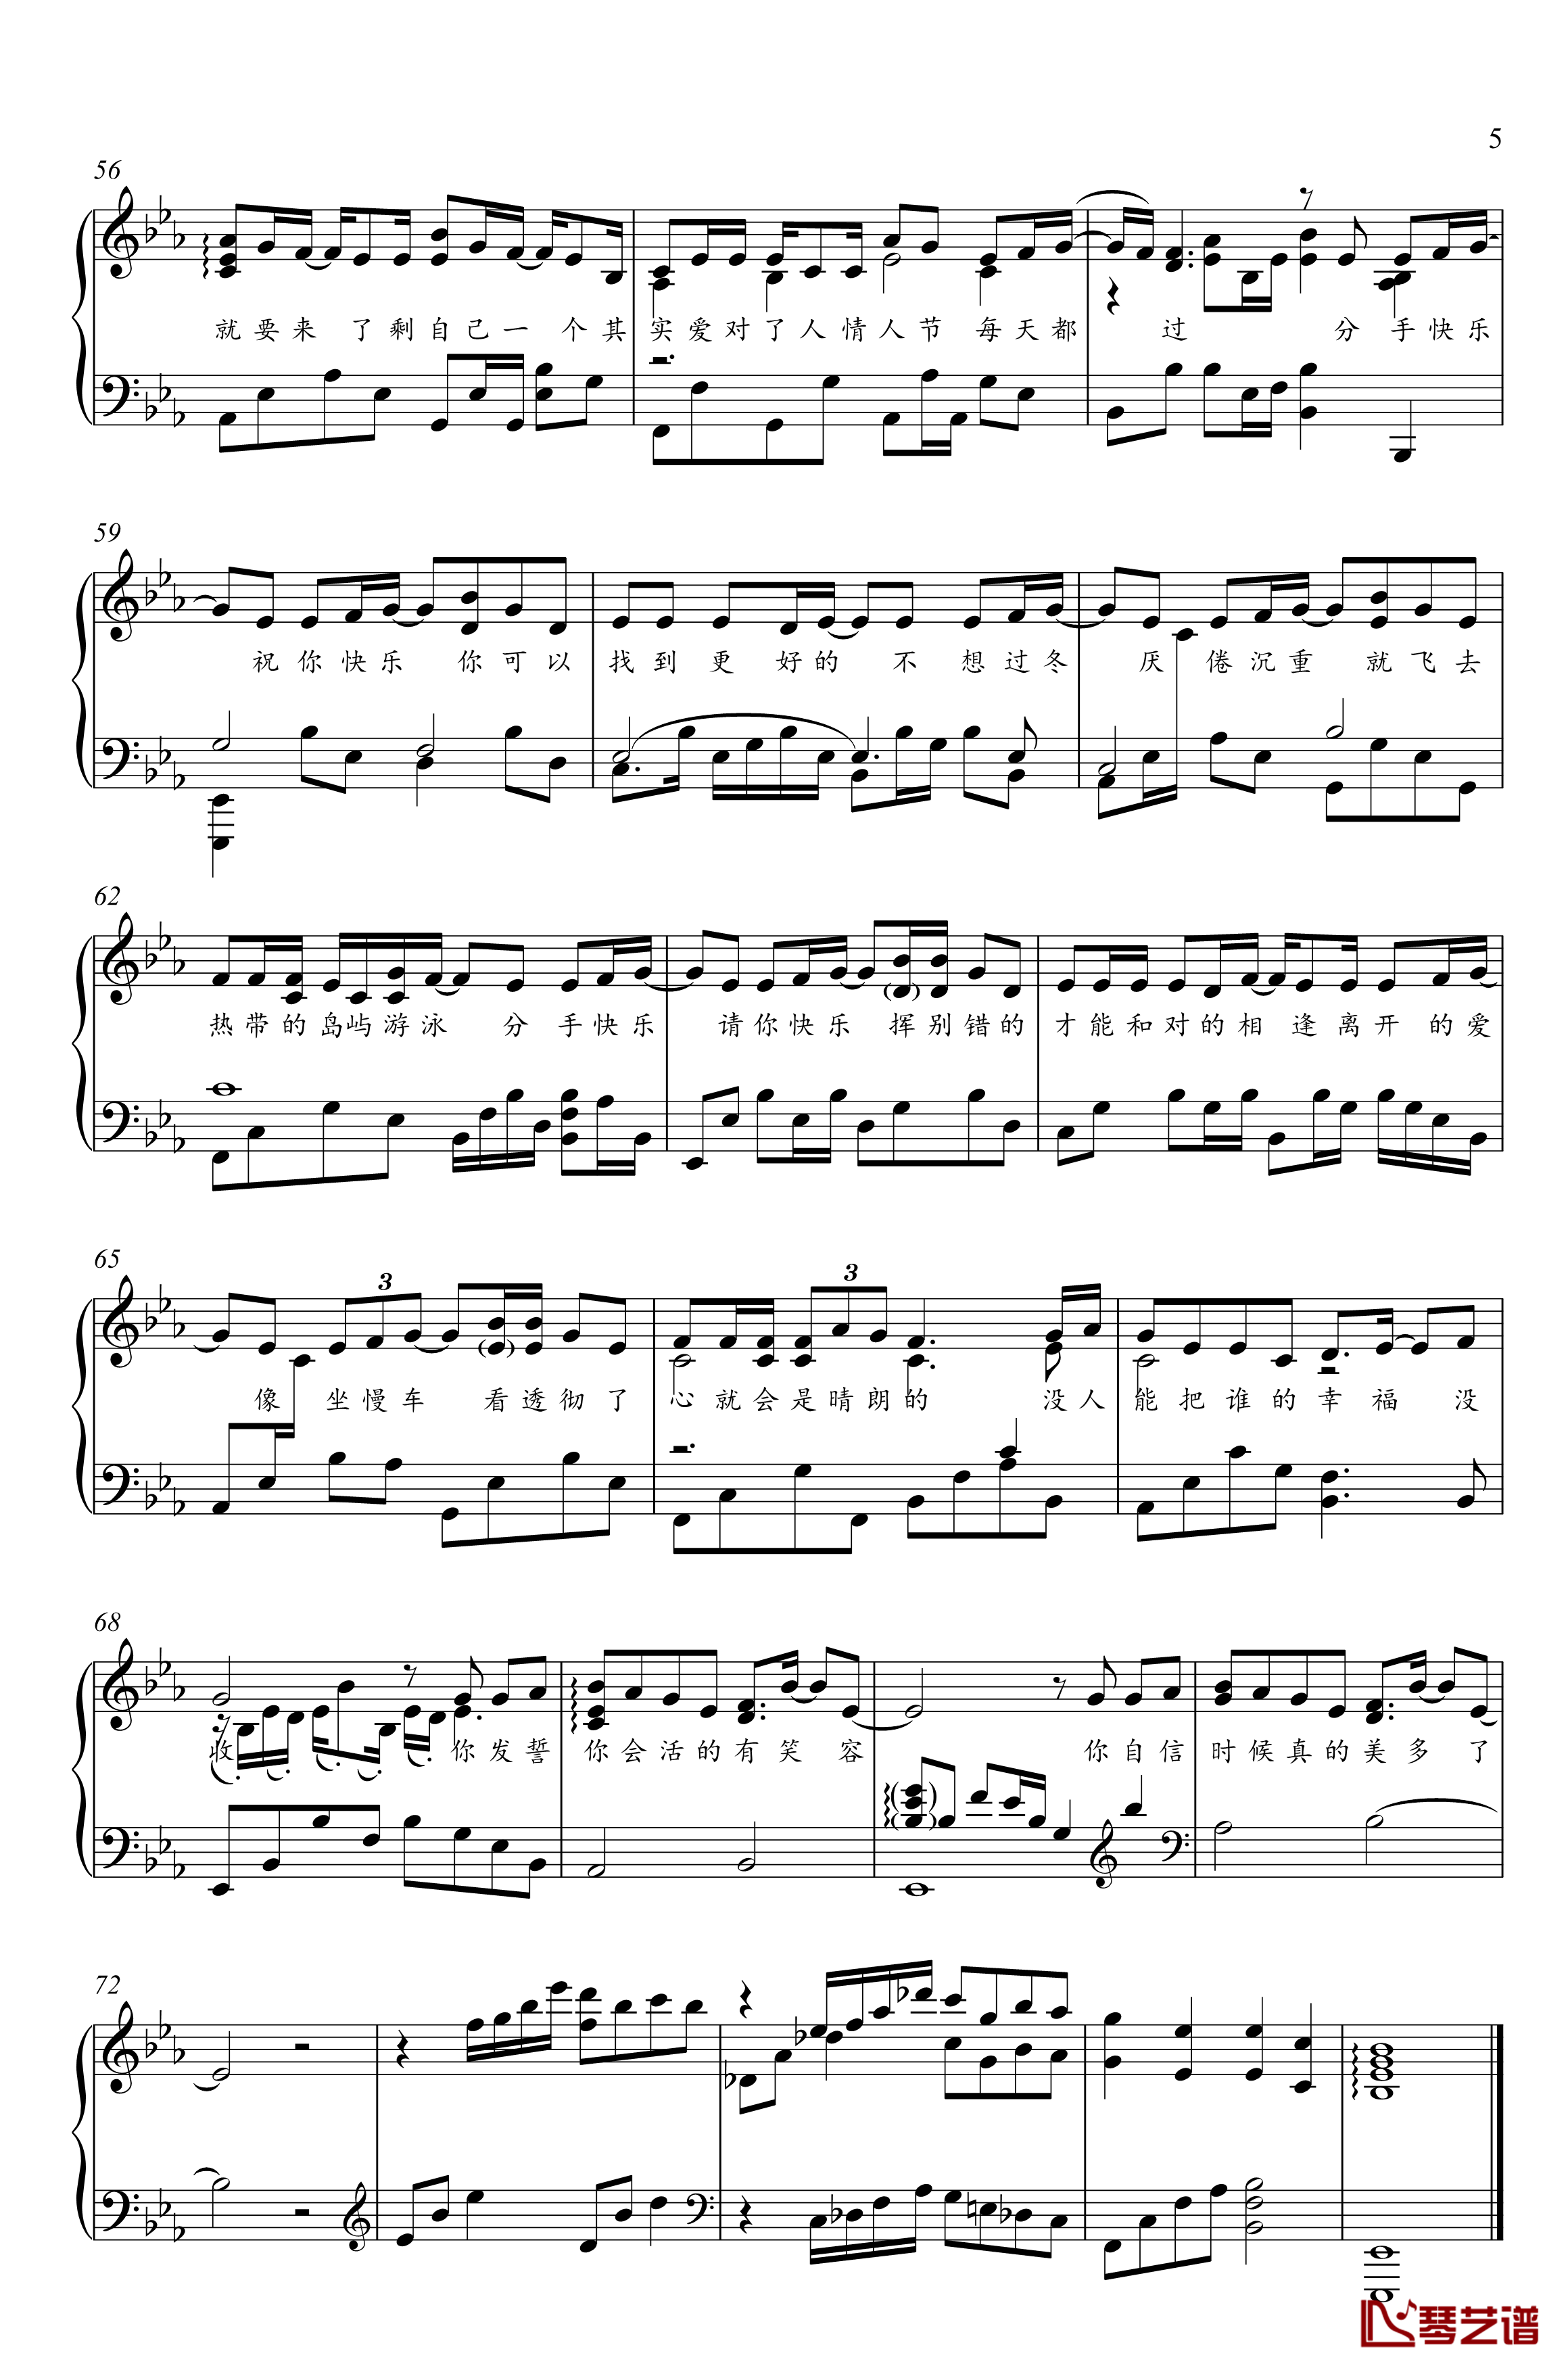 分手快乐钢琴谱-独奏谱-梁静茹-金老师钢琴1910315